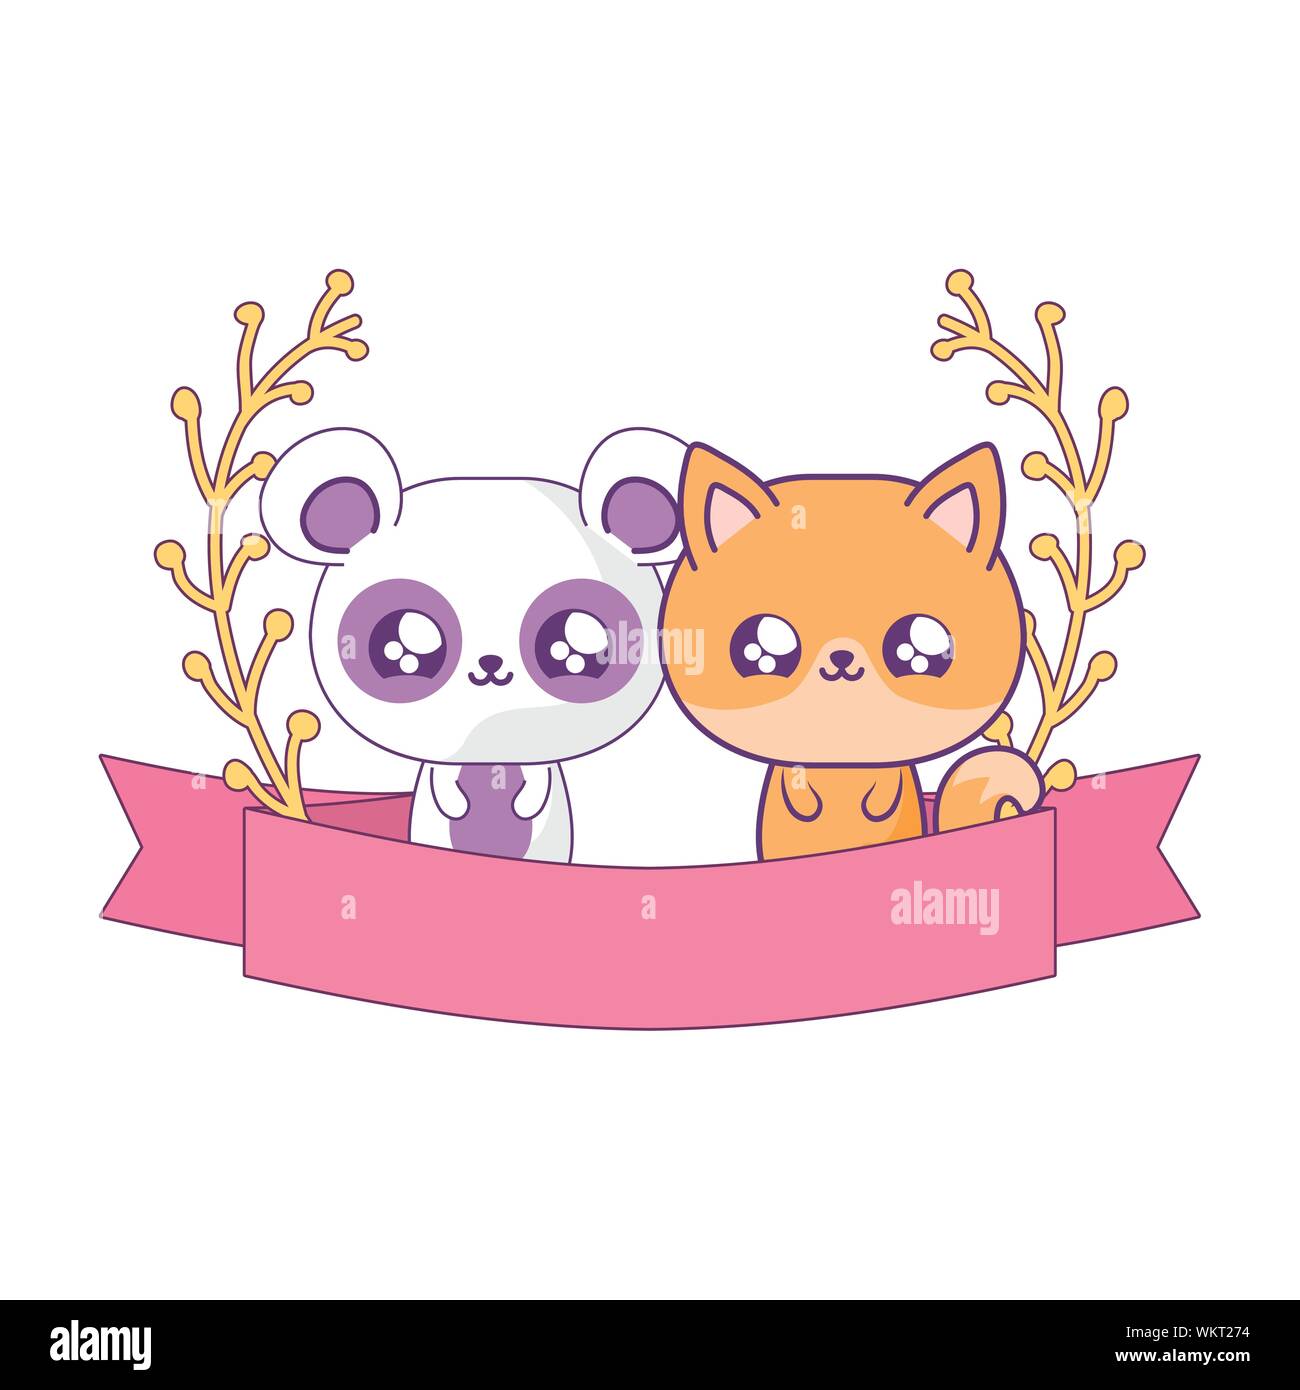 Kawaii panda animal cartoon vector design Stock Vector Image & Art - Alamy